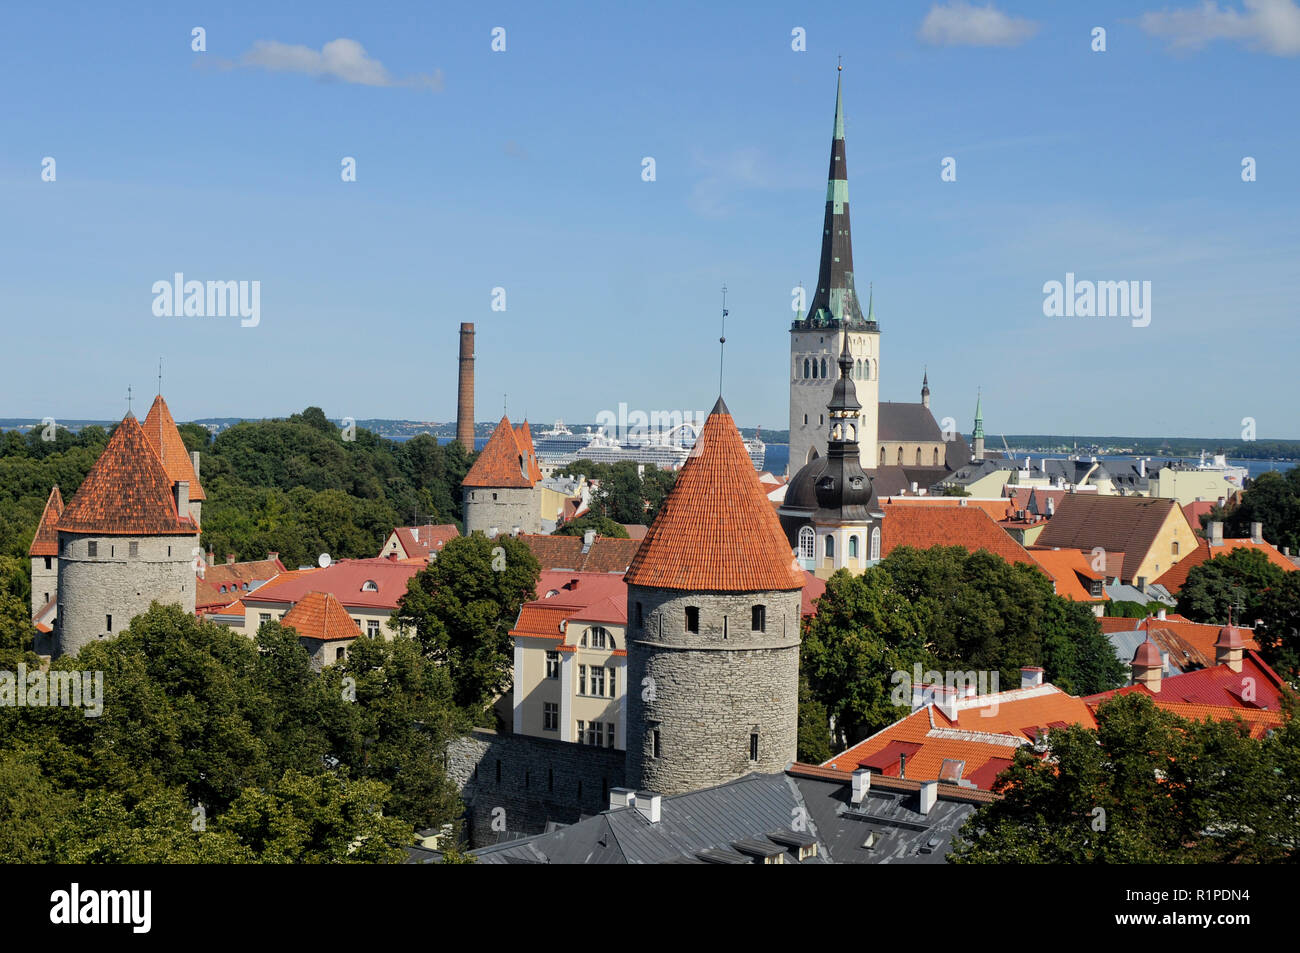 Vanalinn district (Old Town). Tallinn, Estonia Stock Photo